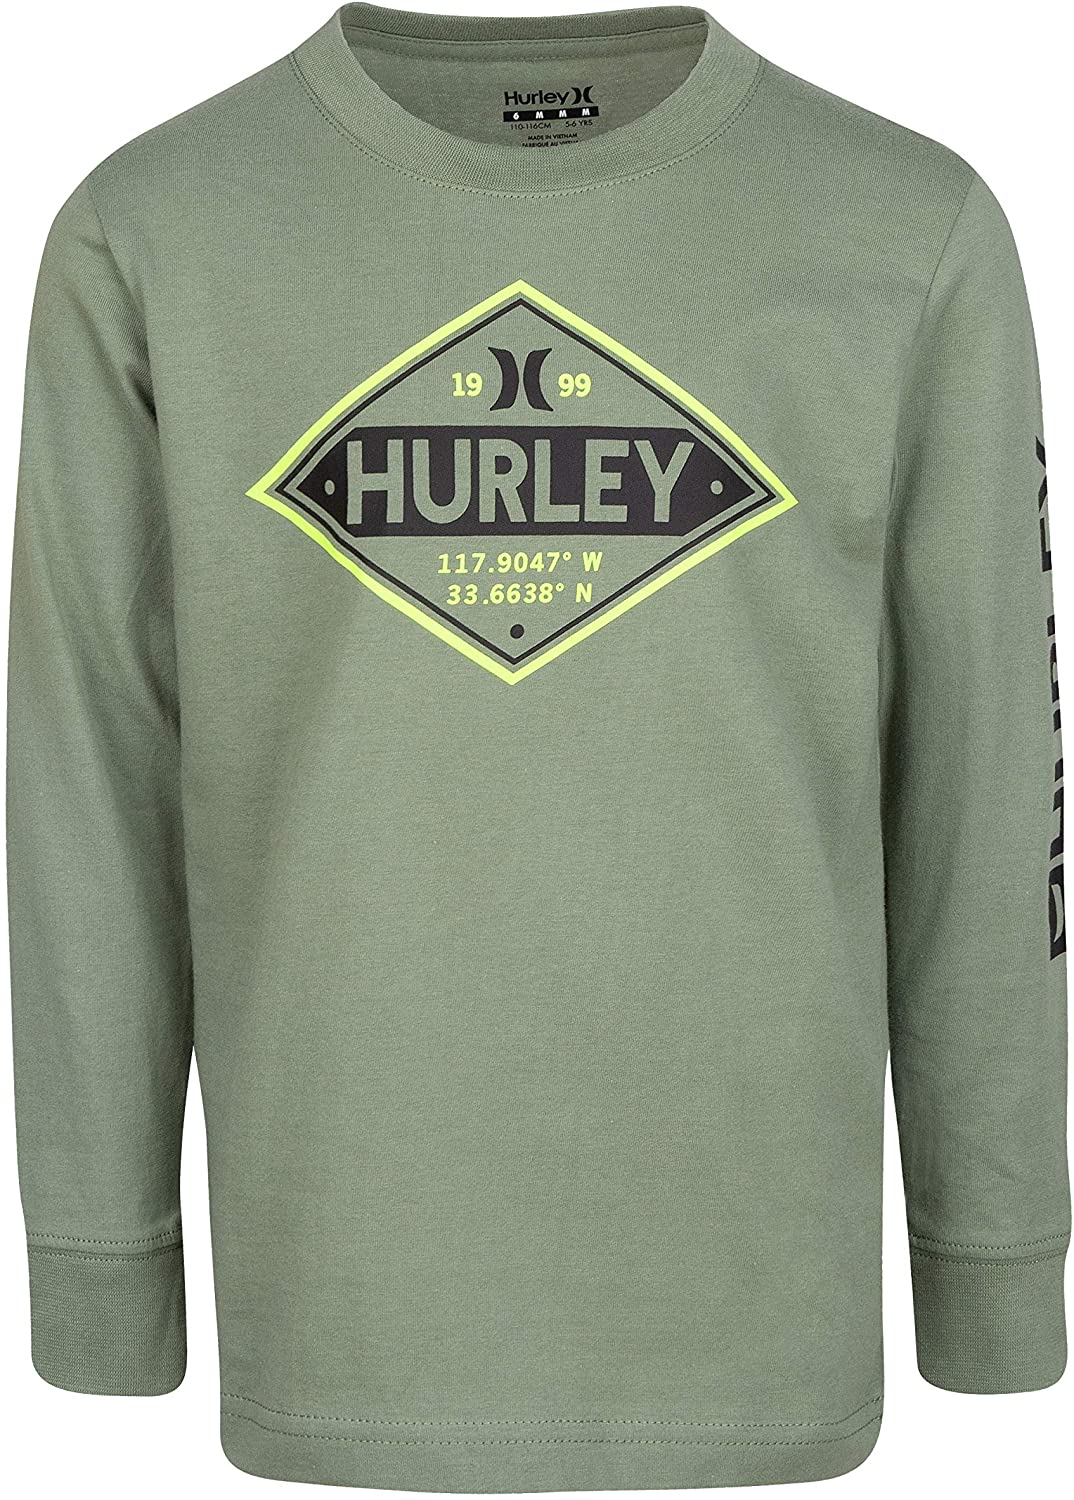 Hurley Big Boys L Long Sleeve T-Shirt Tee Gray Green Raglan Sleeves NWT 